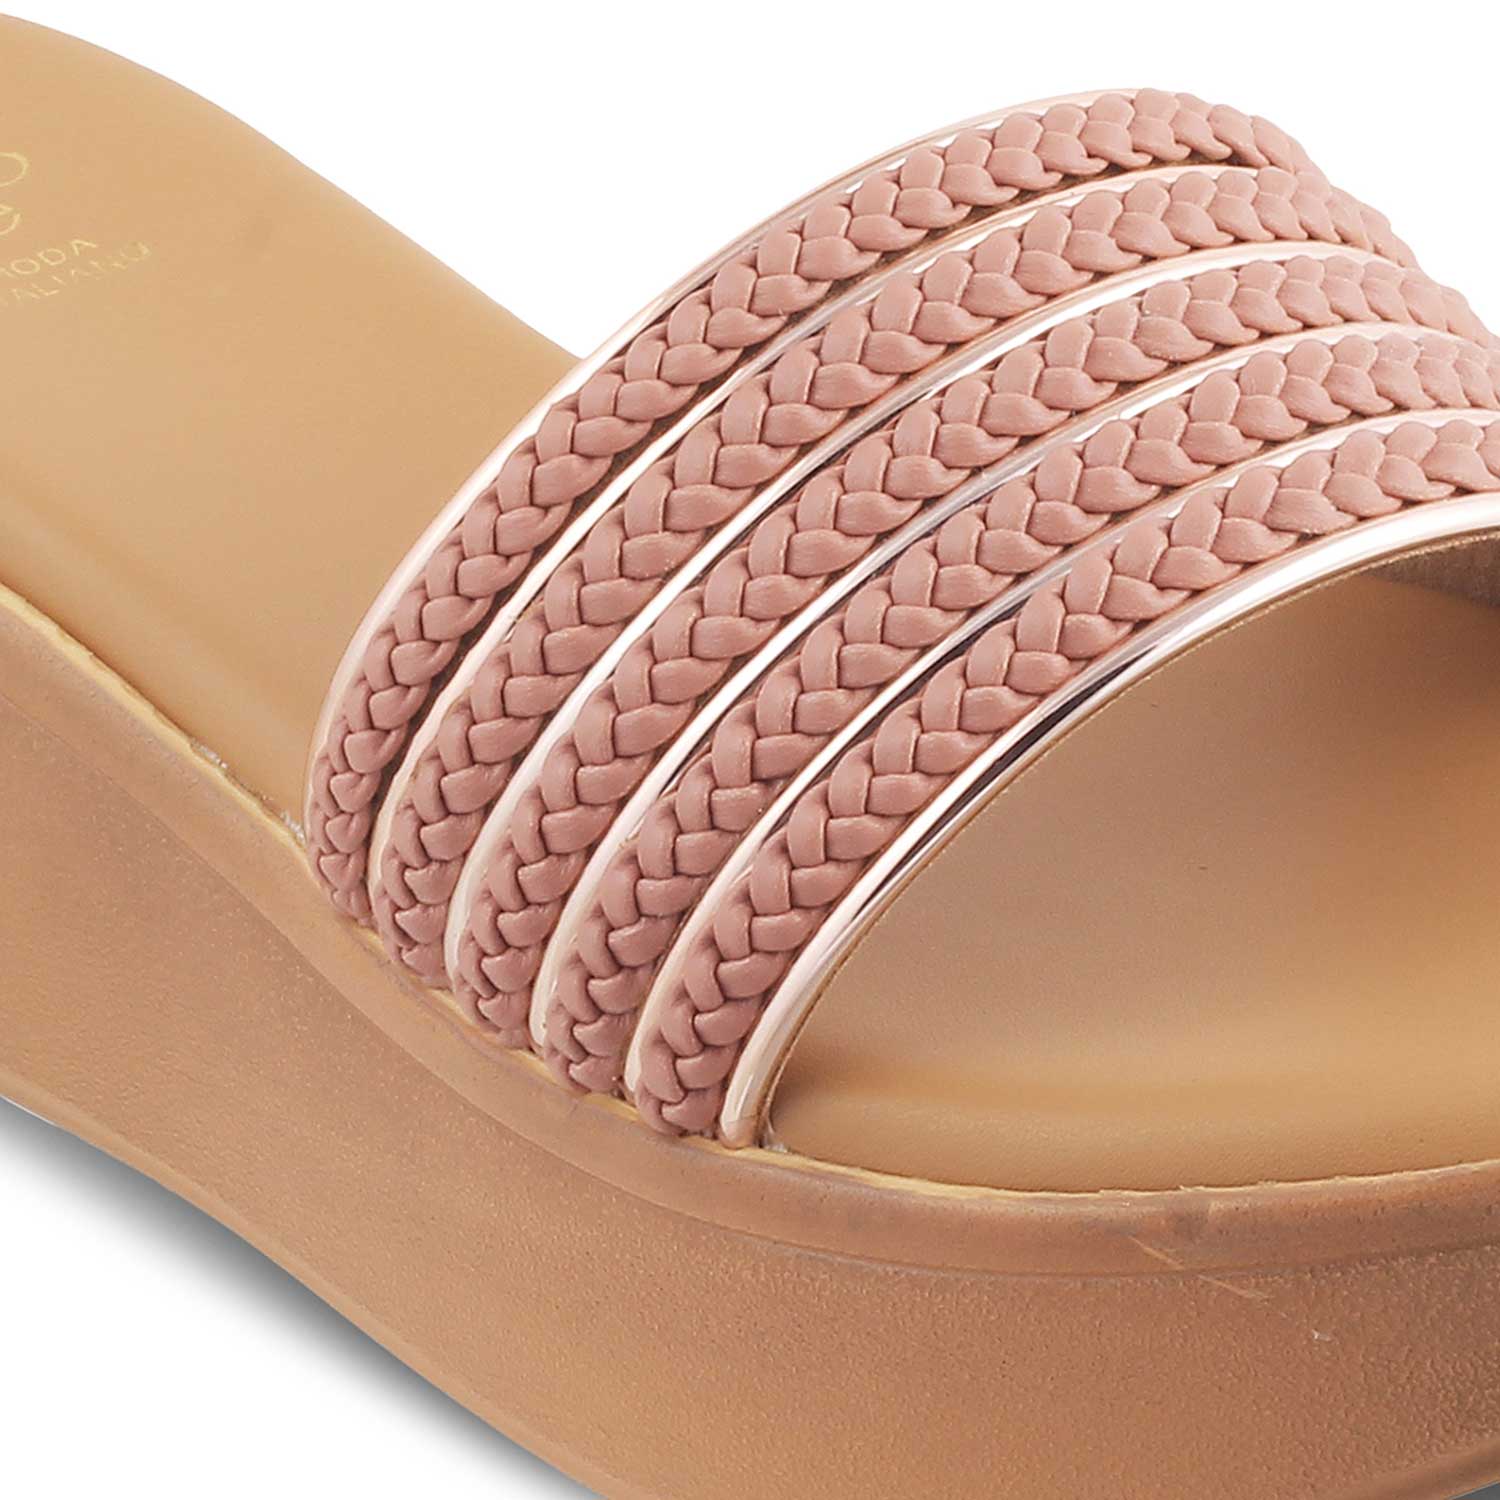 Tresmode-The Andiamo Pink Women's Platform Wedge Sandals Tresmode-Tresmode